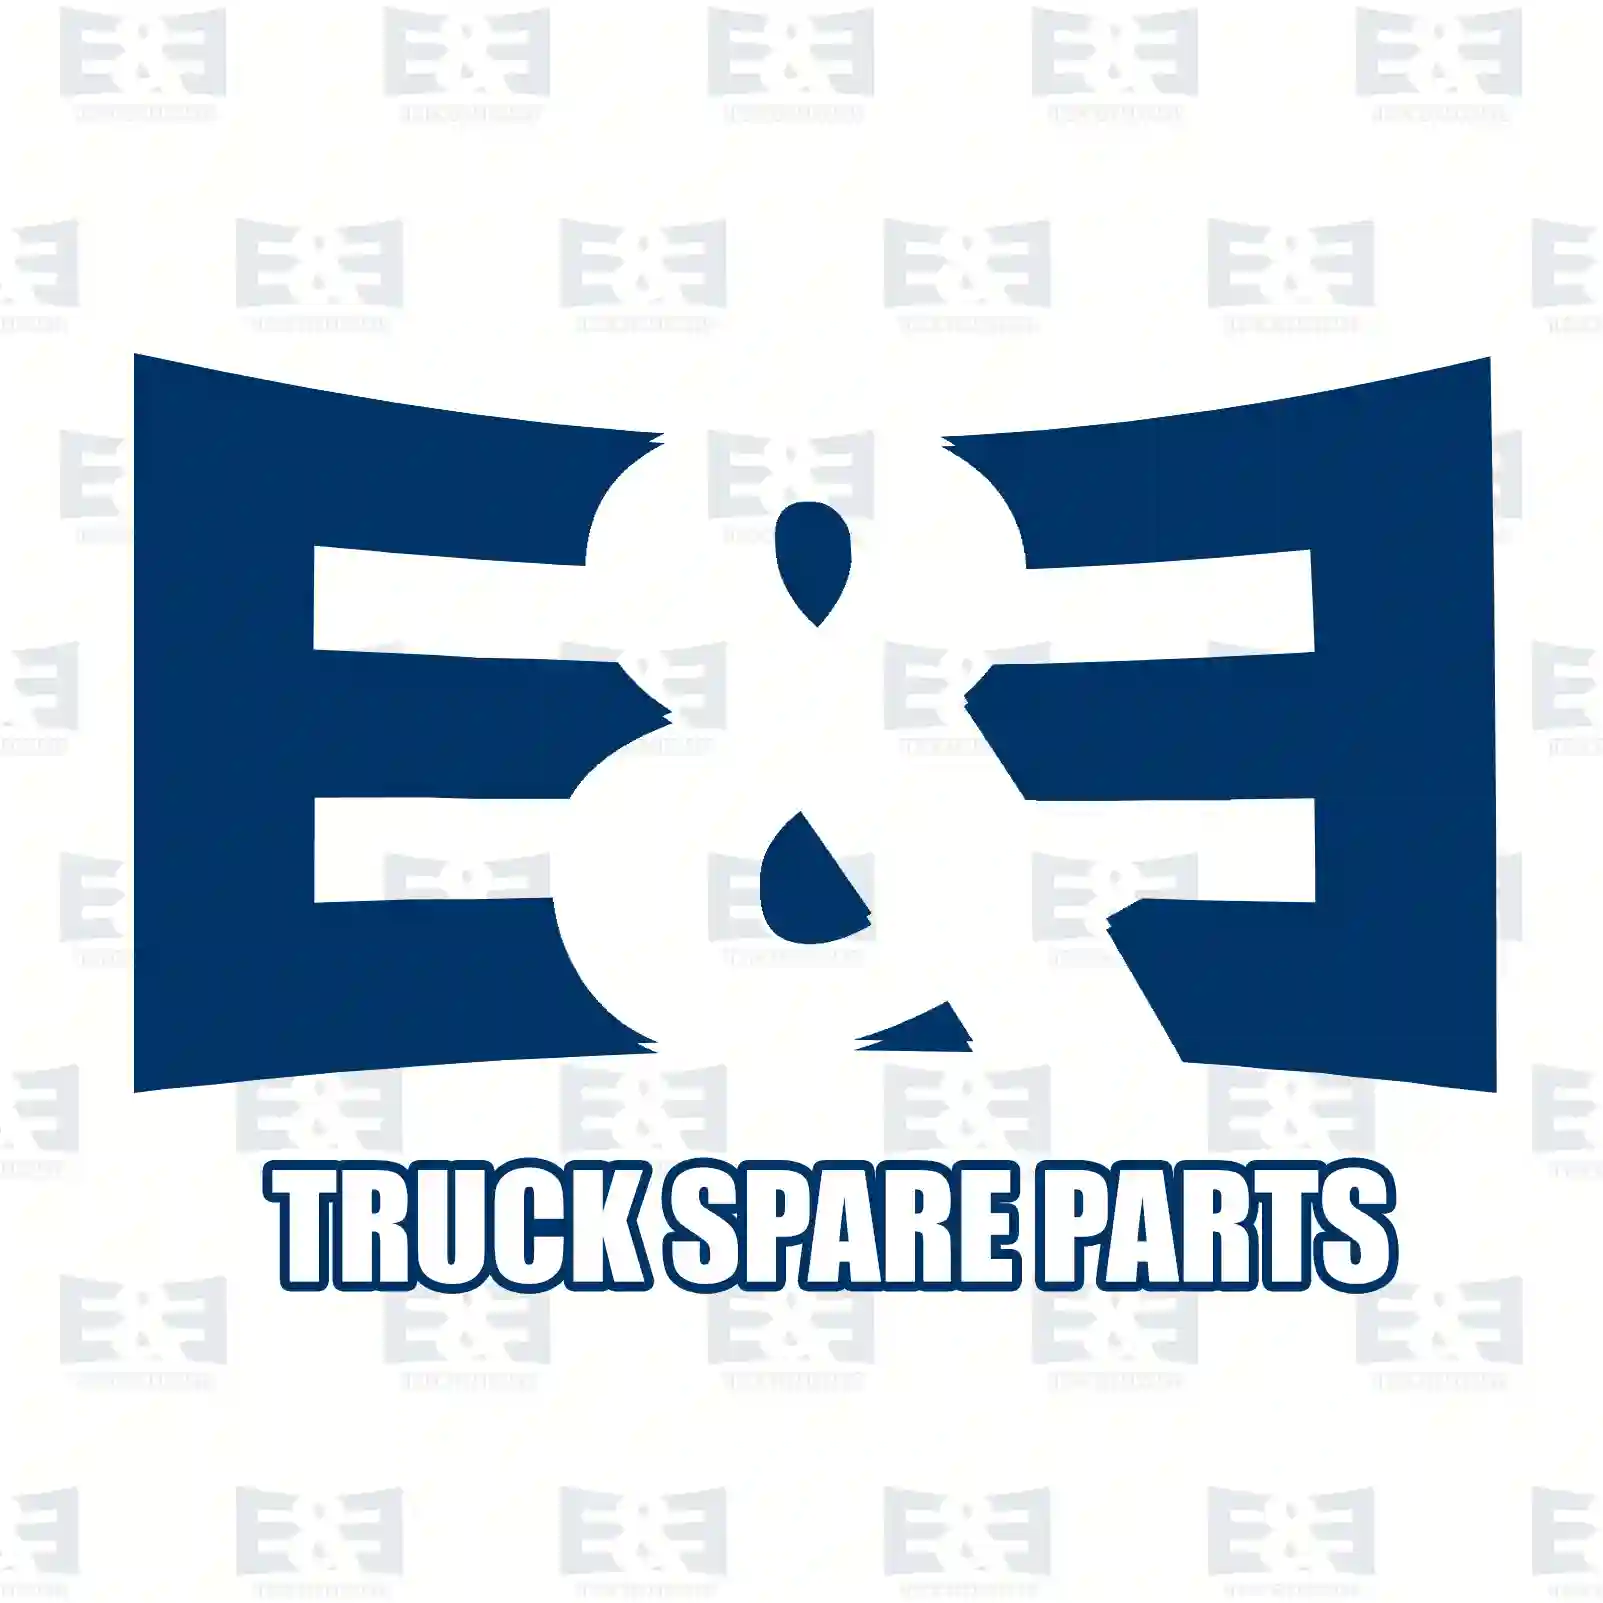 V-stay, 2E2282371, 81432706030, 81432706034, 81432706054, 81432706057, 81432706074, 81432706076, 81432706078, 81432706082, 81432709034, 81432709054, 81432709076, 81432709078 ||  2E2282371 E&E Truck Spare Parts | Truck Spare Parts, Auotomotive Spare Parts V-stay, 2E2282371, 81432706030, 81432706034, 81432706054, 81432706057, 81432706074, 81432706076, 81432706078, 81432706082, 81432709034, 81432709054, 81432709076, 81432709078 ||  2E2282371 E&E Truck Spare Parts | Truck Spare Parts, Auotomotive Spare Parts